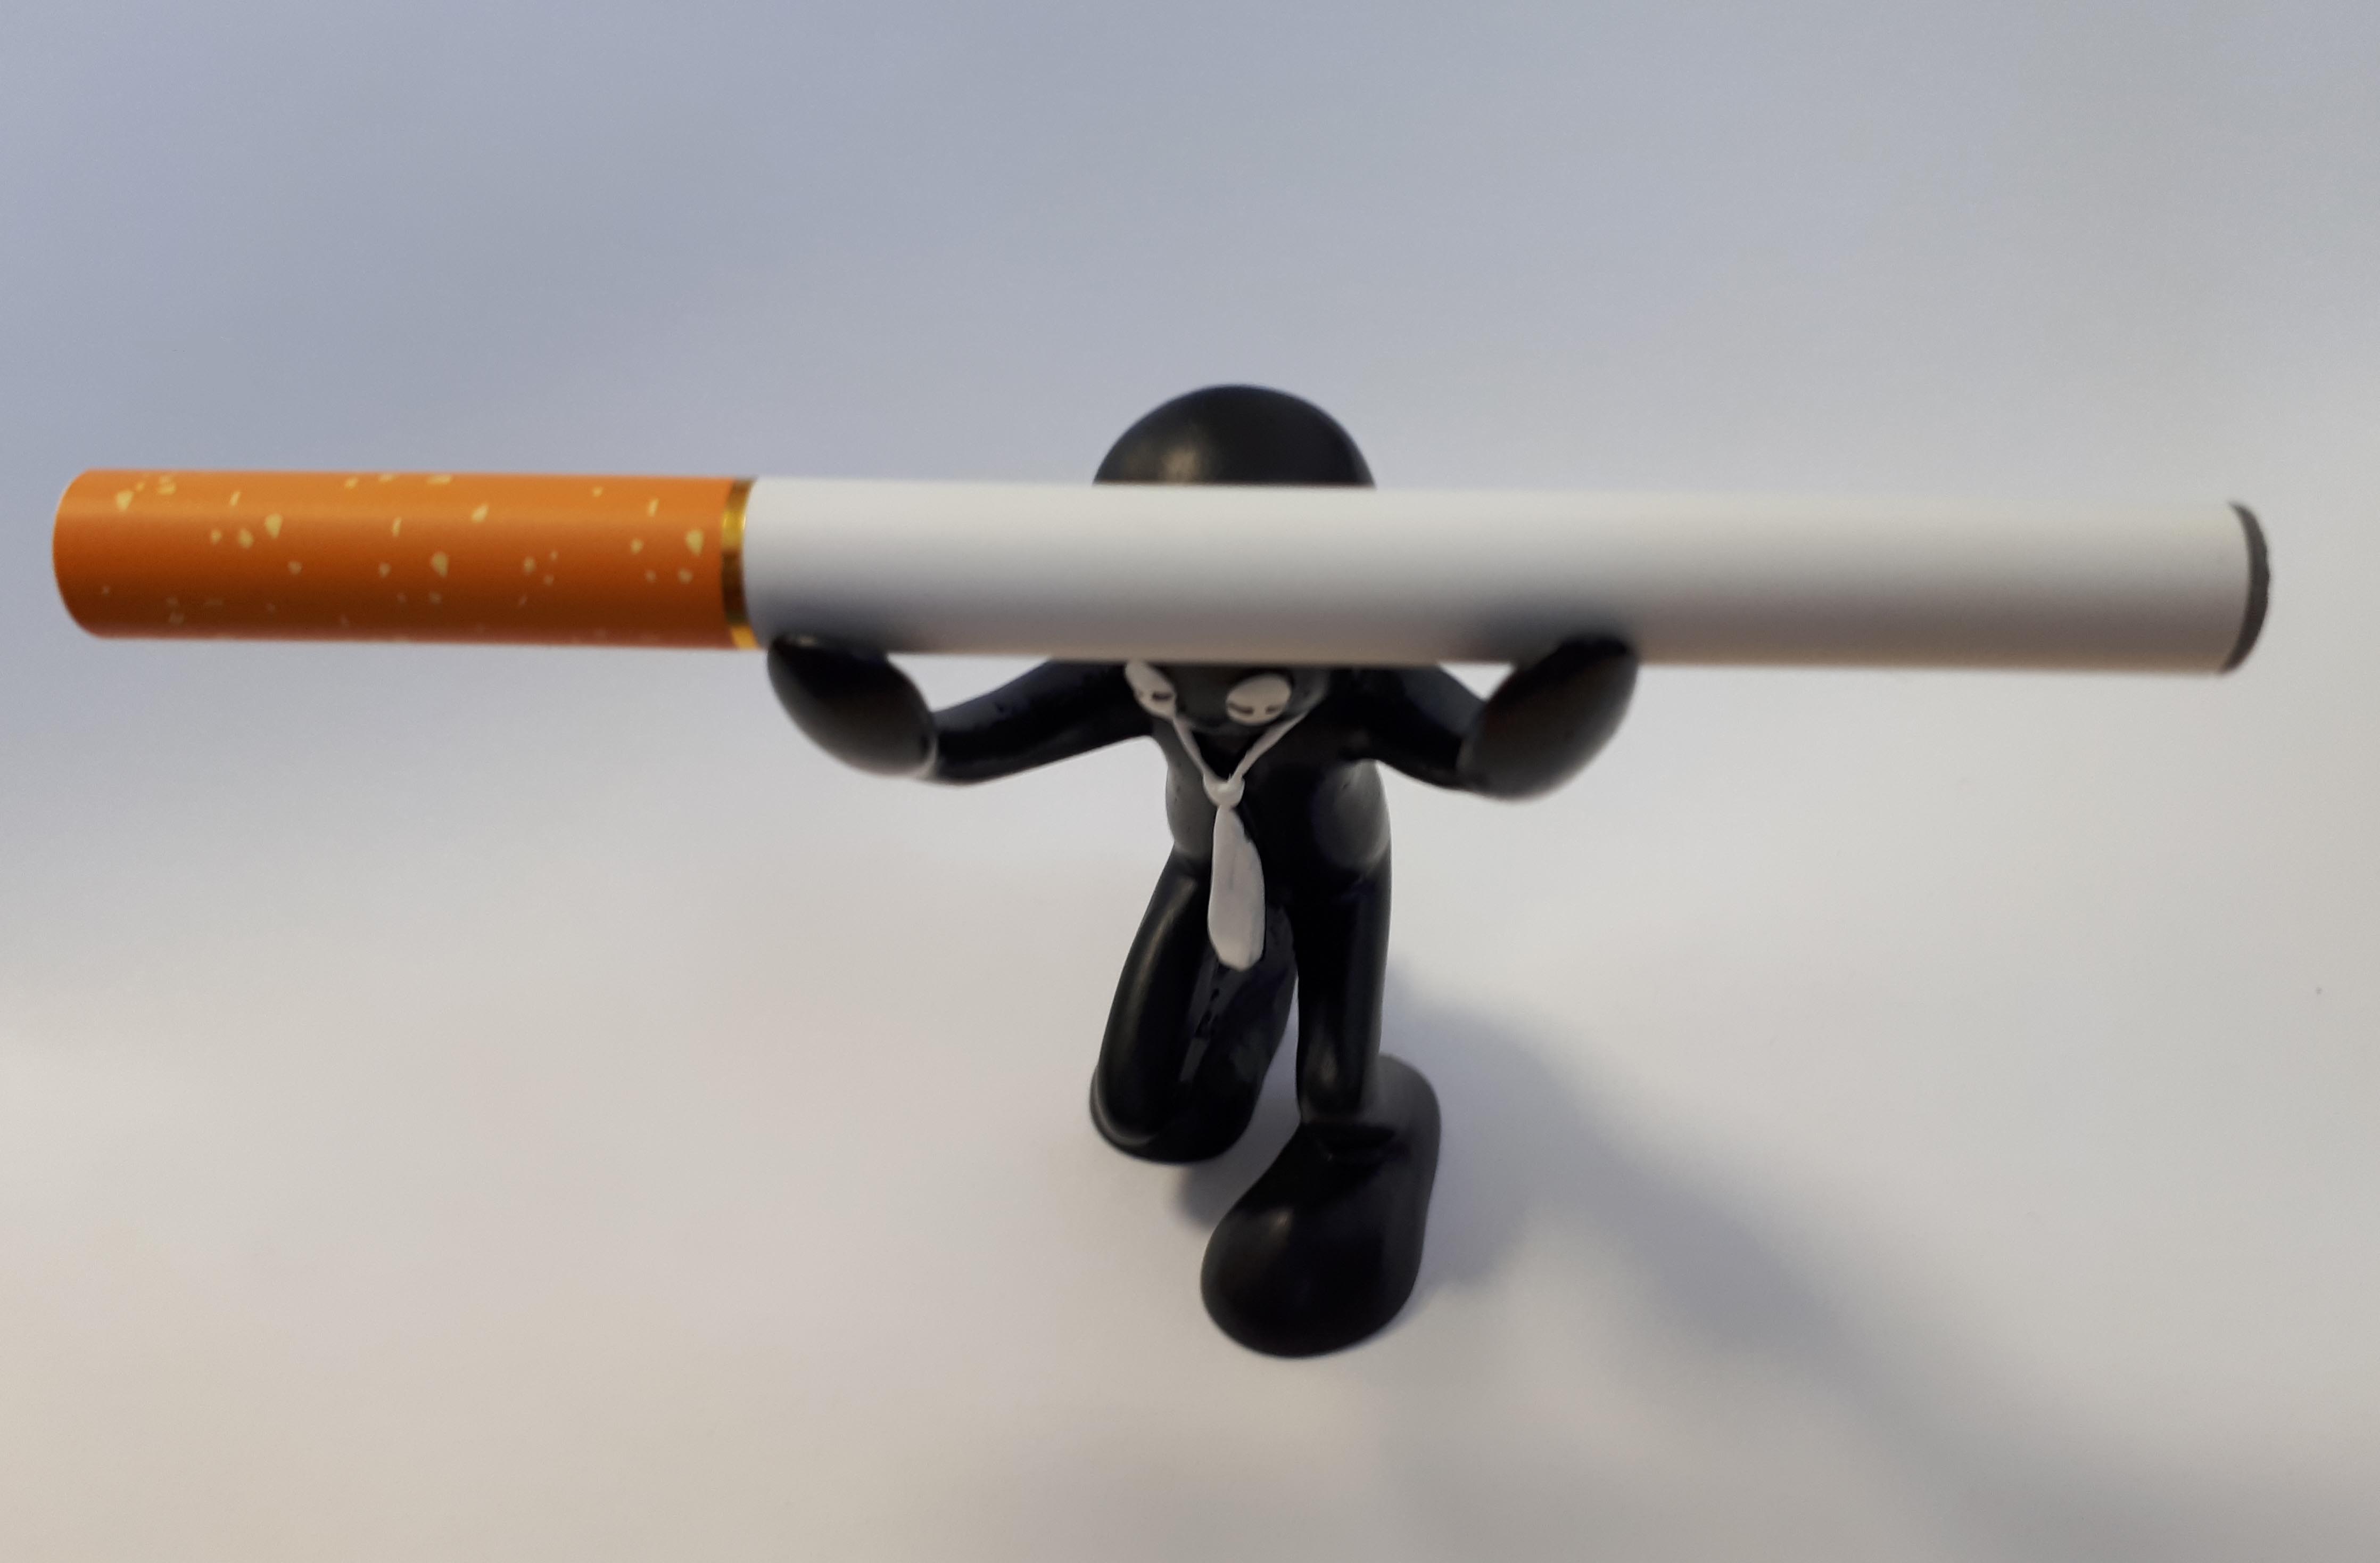 Panáček - stojánek na e-cigaretu